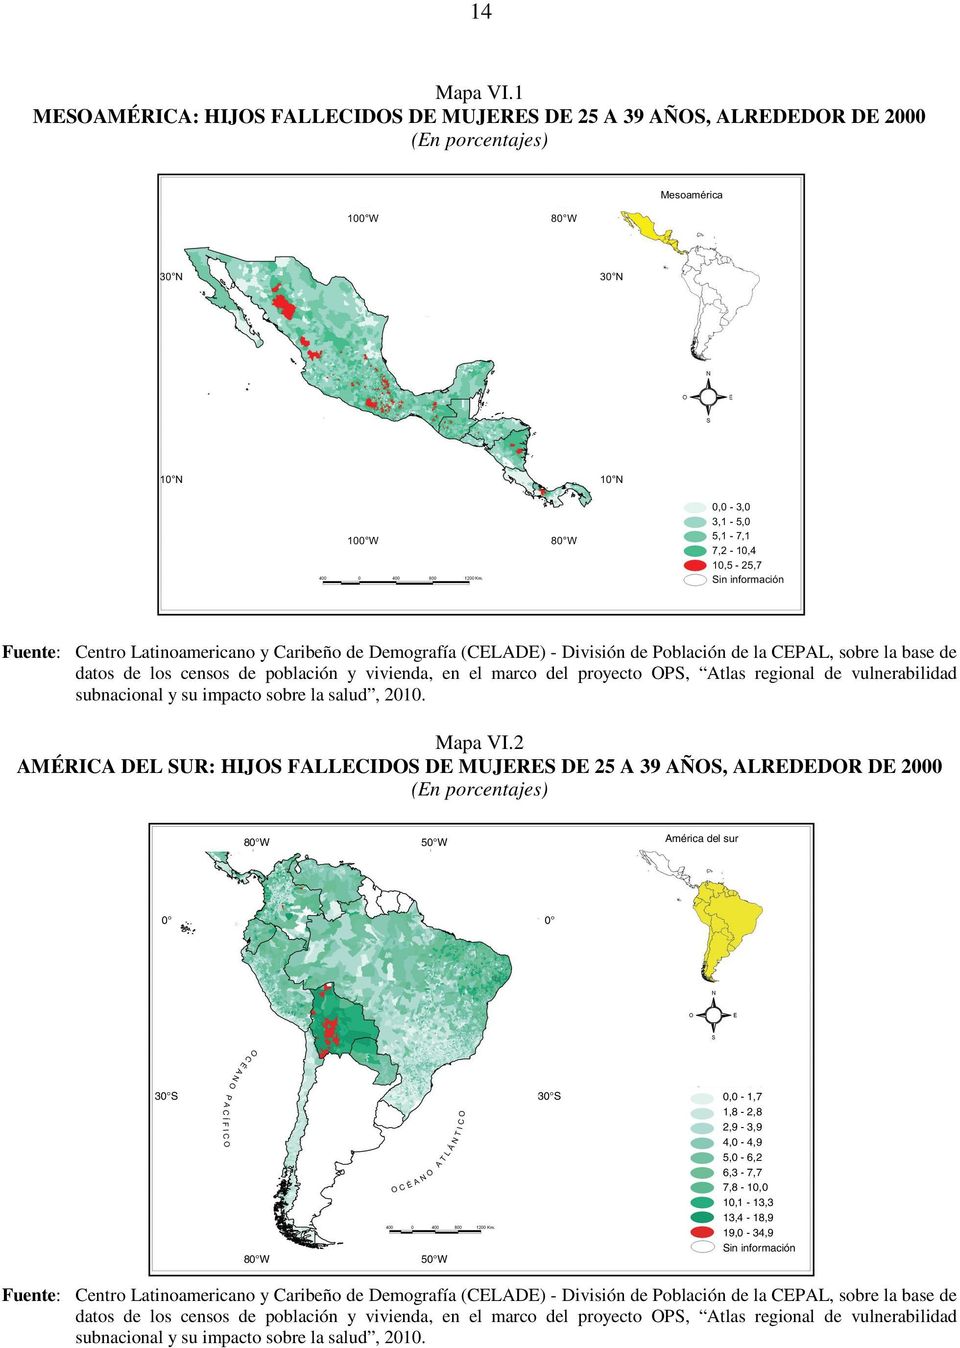 información Fuente: Centro Latinoamericano y Caribeño de Demografía (CELADE) - División de Población de la CEPAL, sobre la base de datos de los censos de población y vivienda, en el marco del